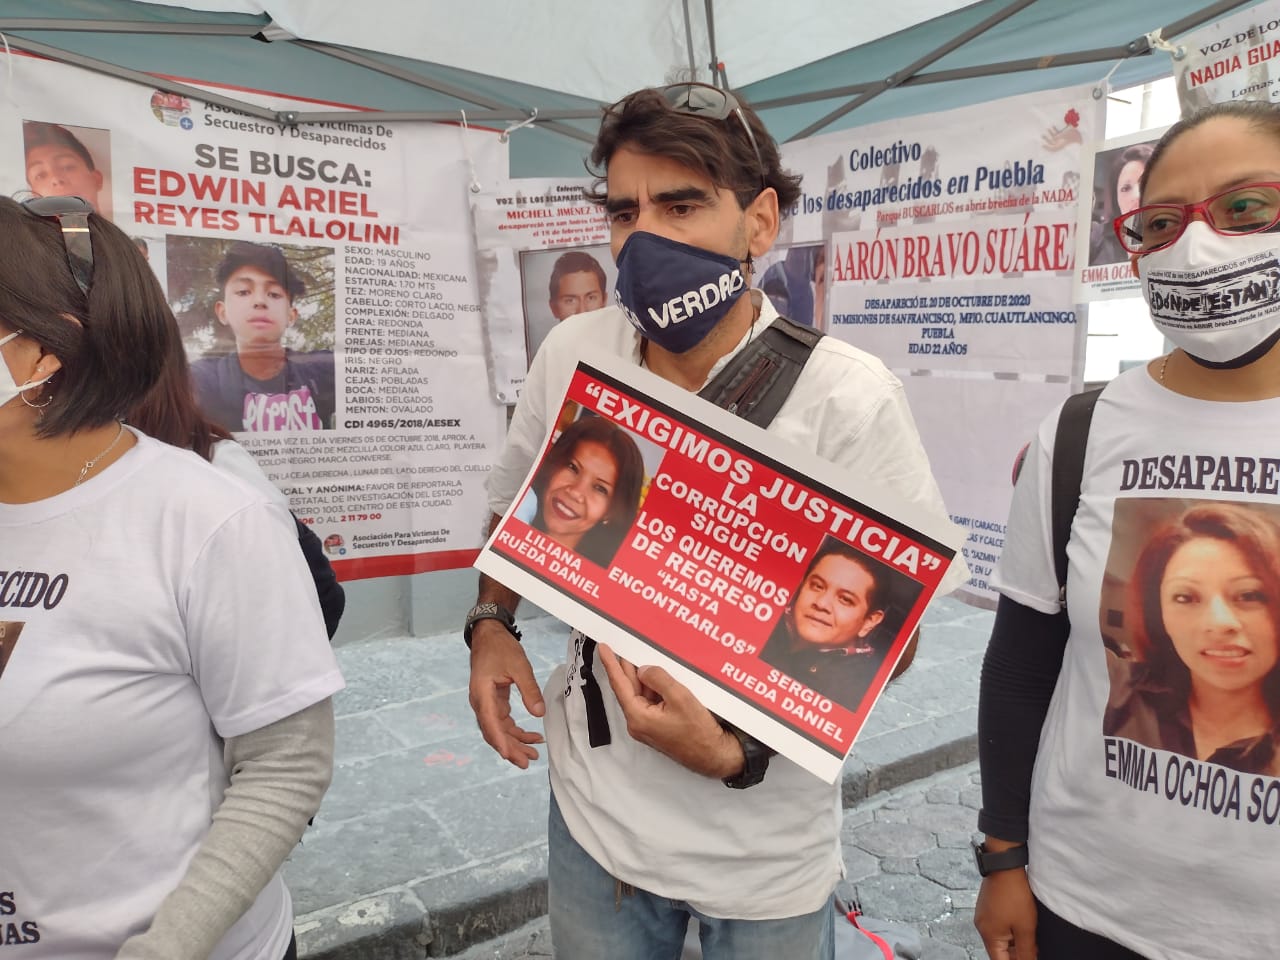 Reclama Colectivo aprobar Ley de Desaparecidos en Puebla